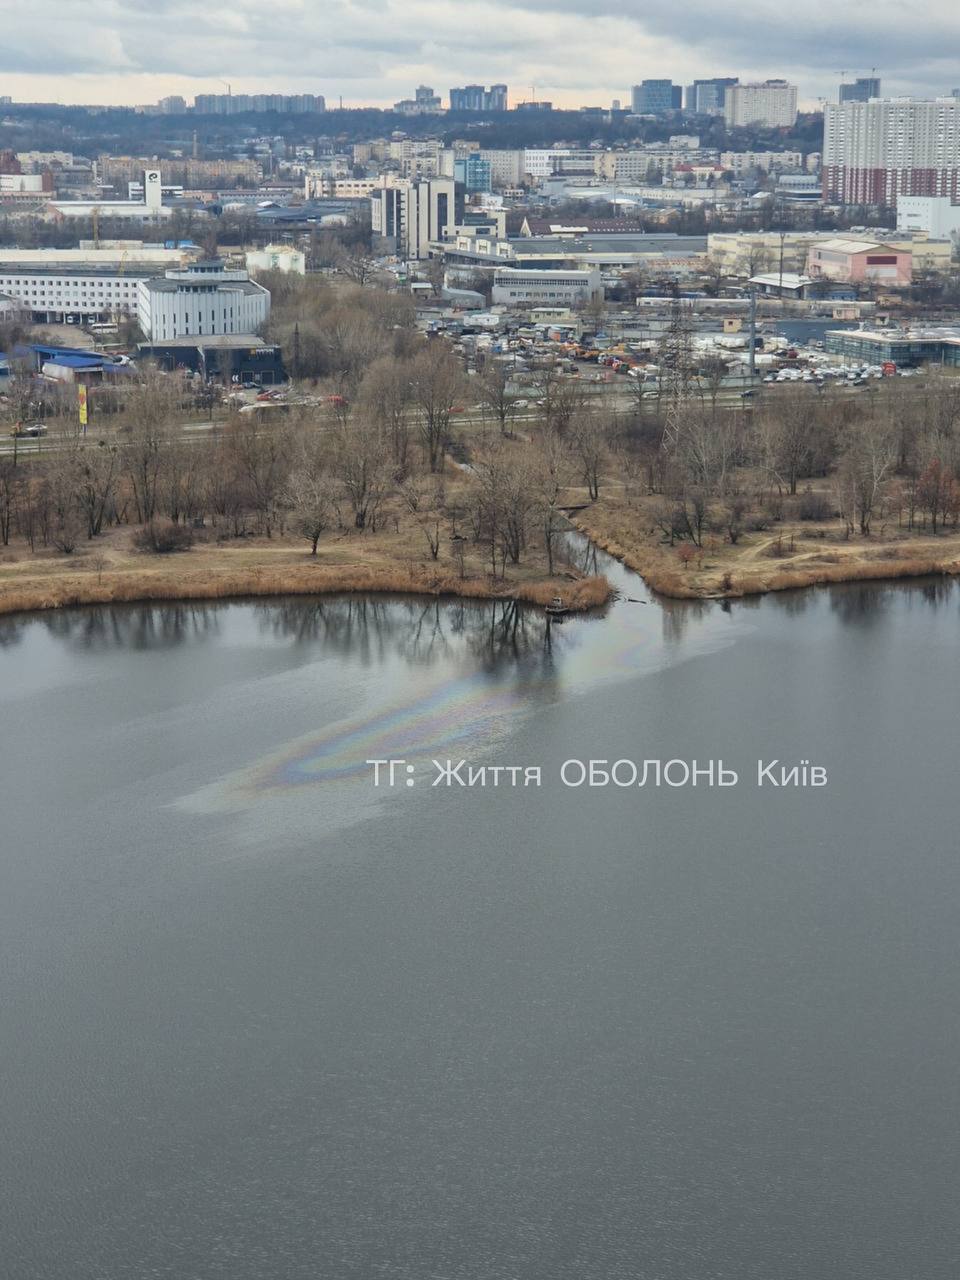 У Києві невідомі злили нафтопродукти в озеро на Оболоні. Фото і подробиці